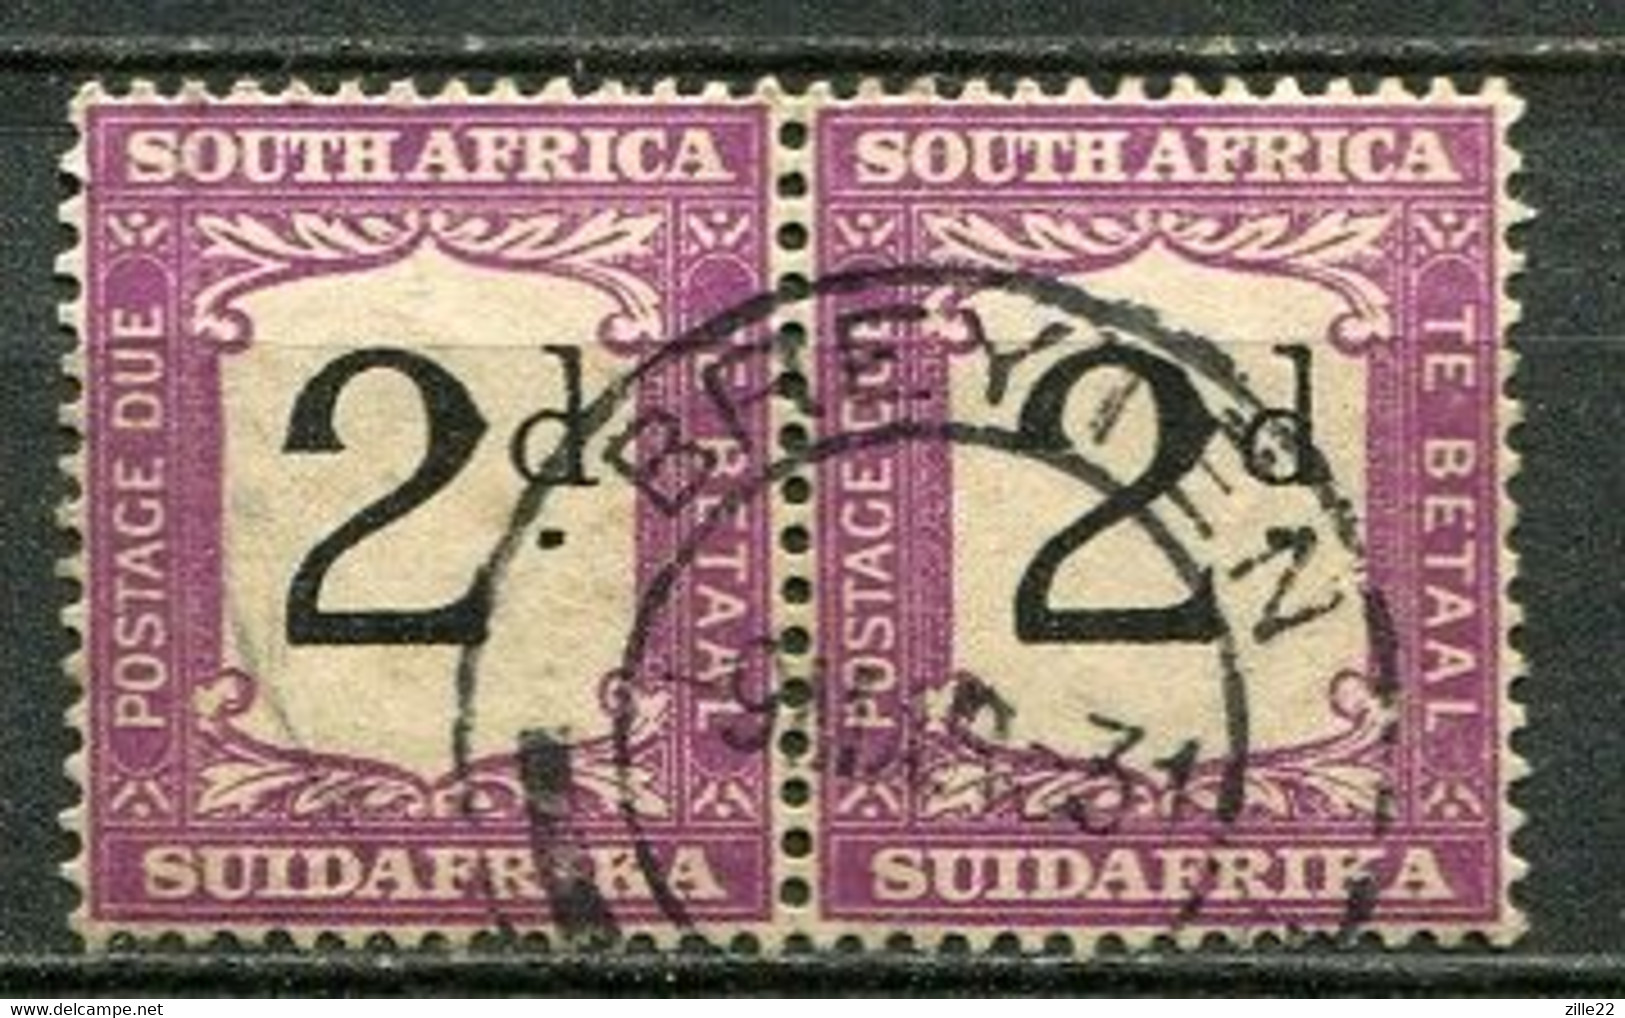 Union Of South Africa Postage Due, Südafrika Portomarken Mi# 19  Gestempelt/used - Impuestos